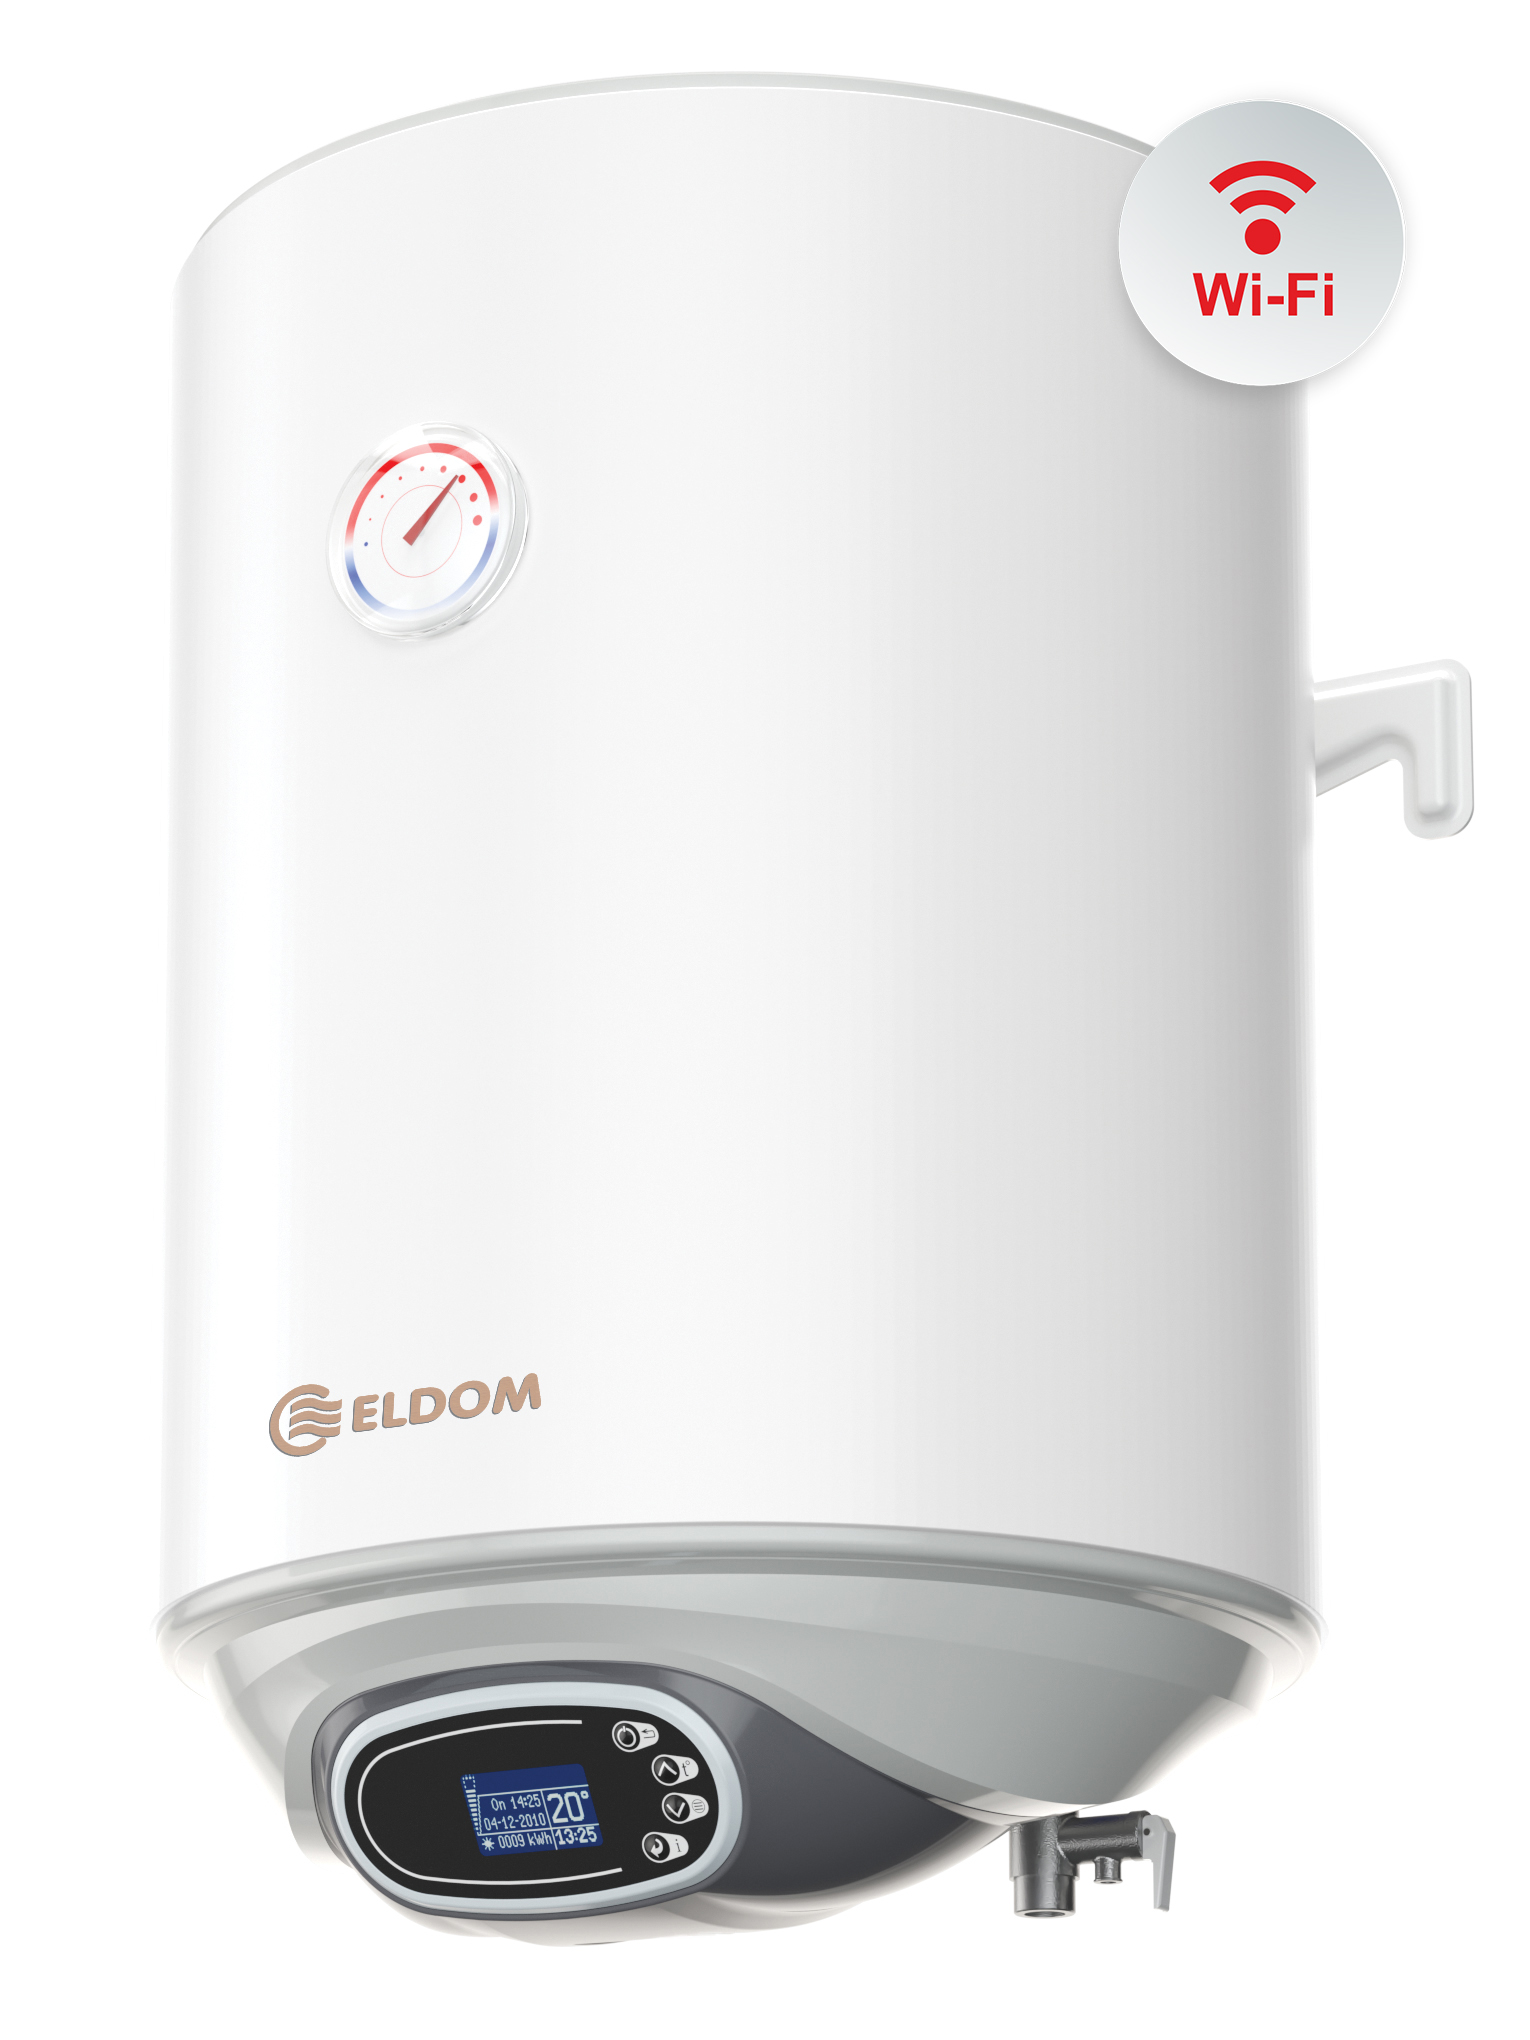 Warmwasserspeicher Eldom Favourite Digital 30 Liter druckfest  Wi-Fi App Steuerung